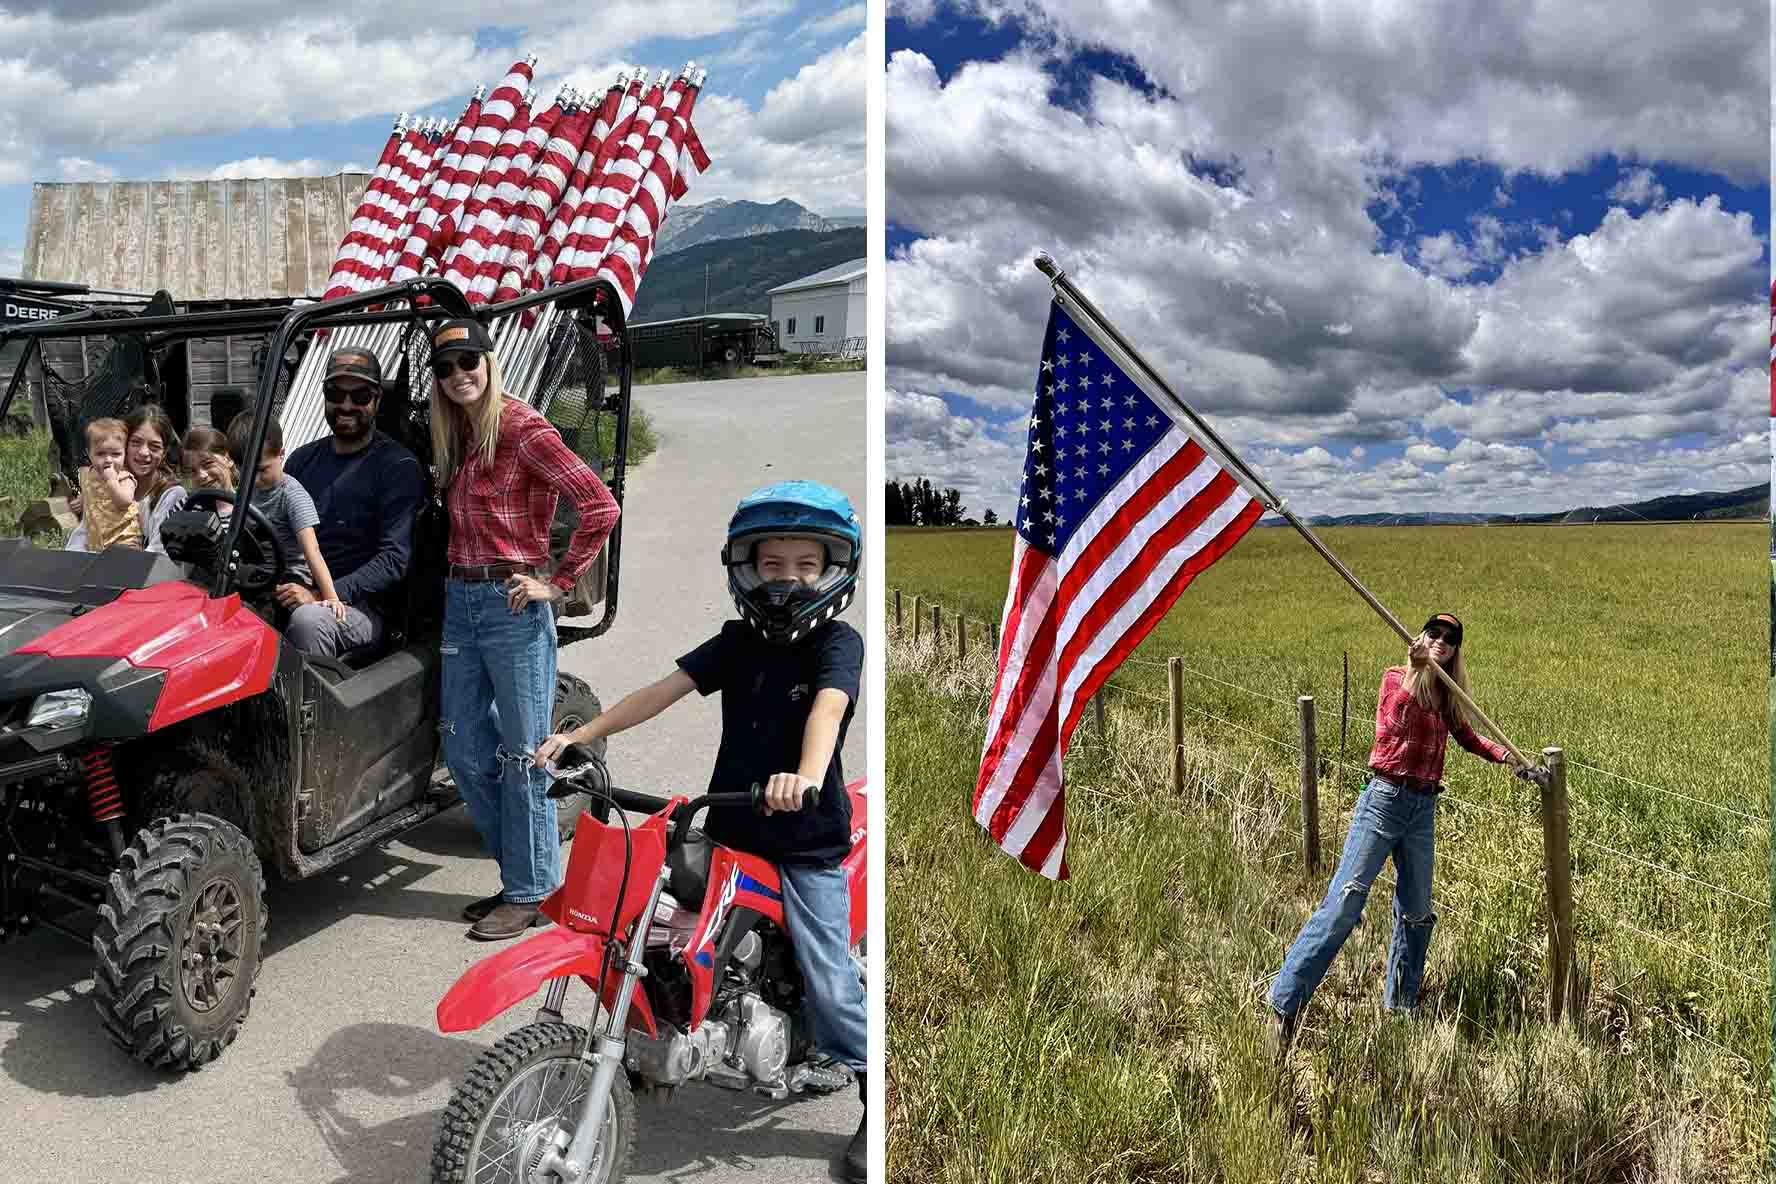 Gia đình này đã hình thành một truyền thống ái quốc mới, bằng cách treo lên các bó cờ. (Ảnh: Đăng dưới sự cho phép của Trang trại Salt Lake)